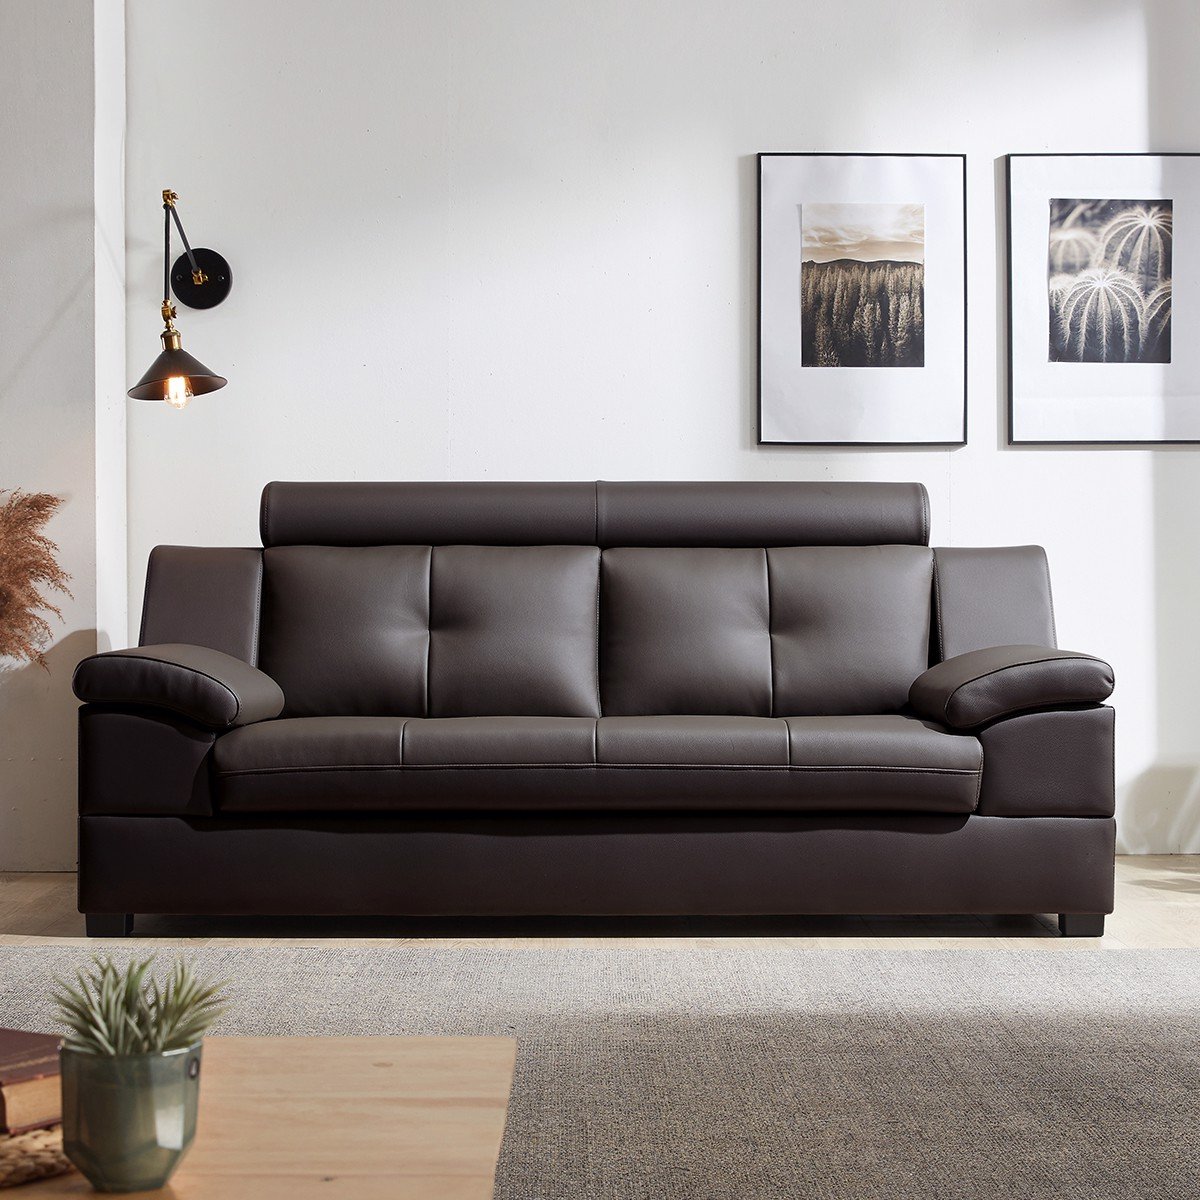 Tại sao bạn nên bọc ghế sofa thay vì mua sofa mới